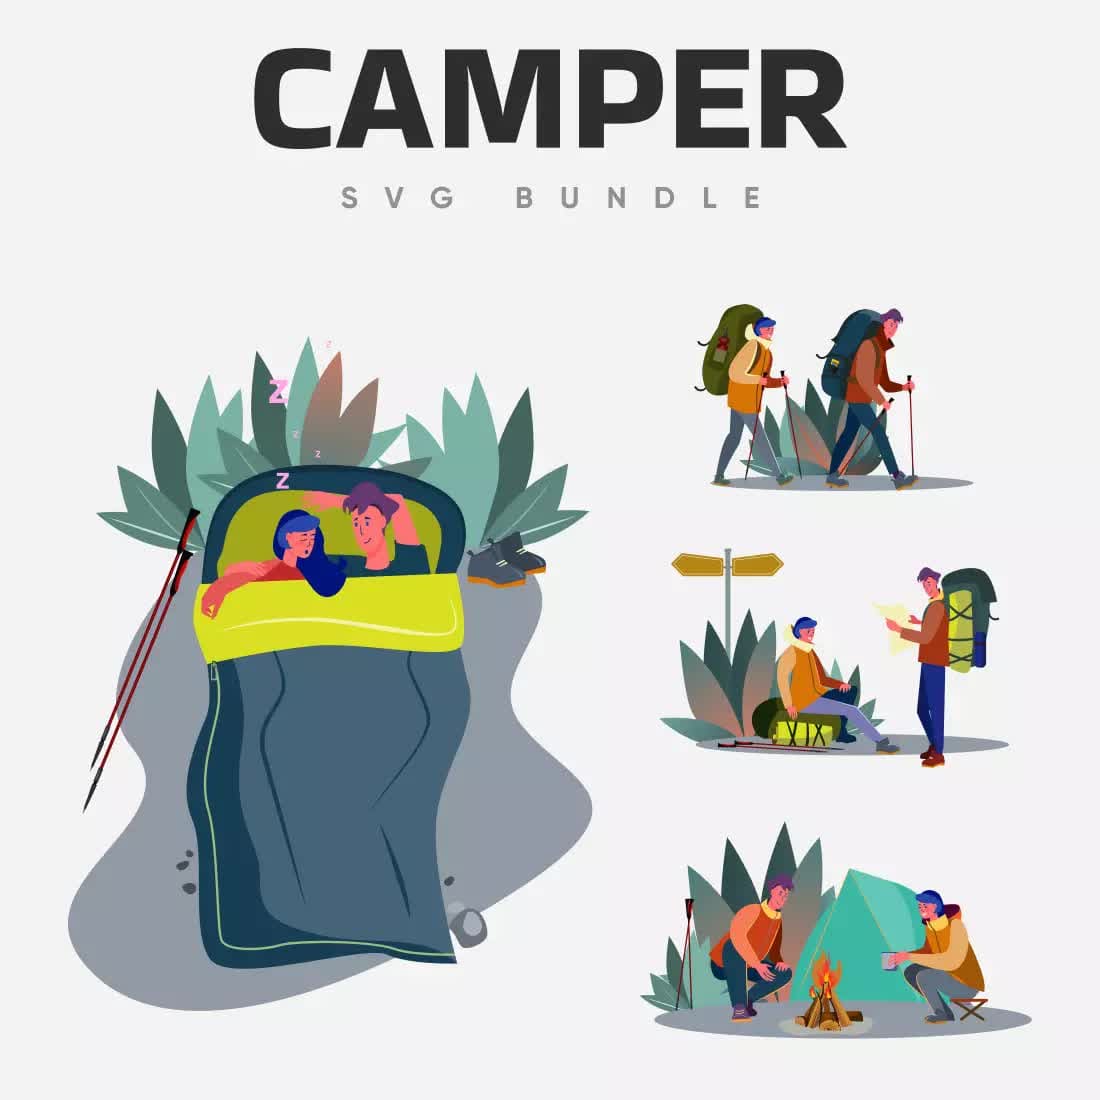 Camper SVG Bundle Preview 6.